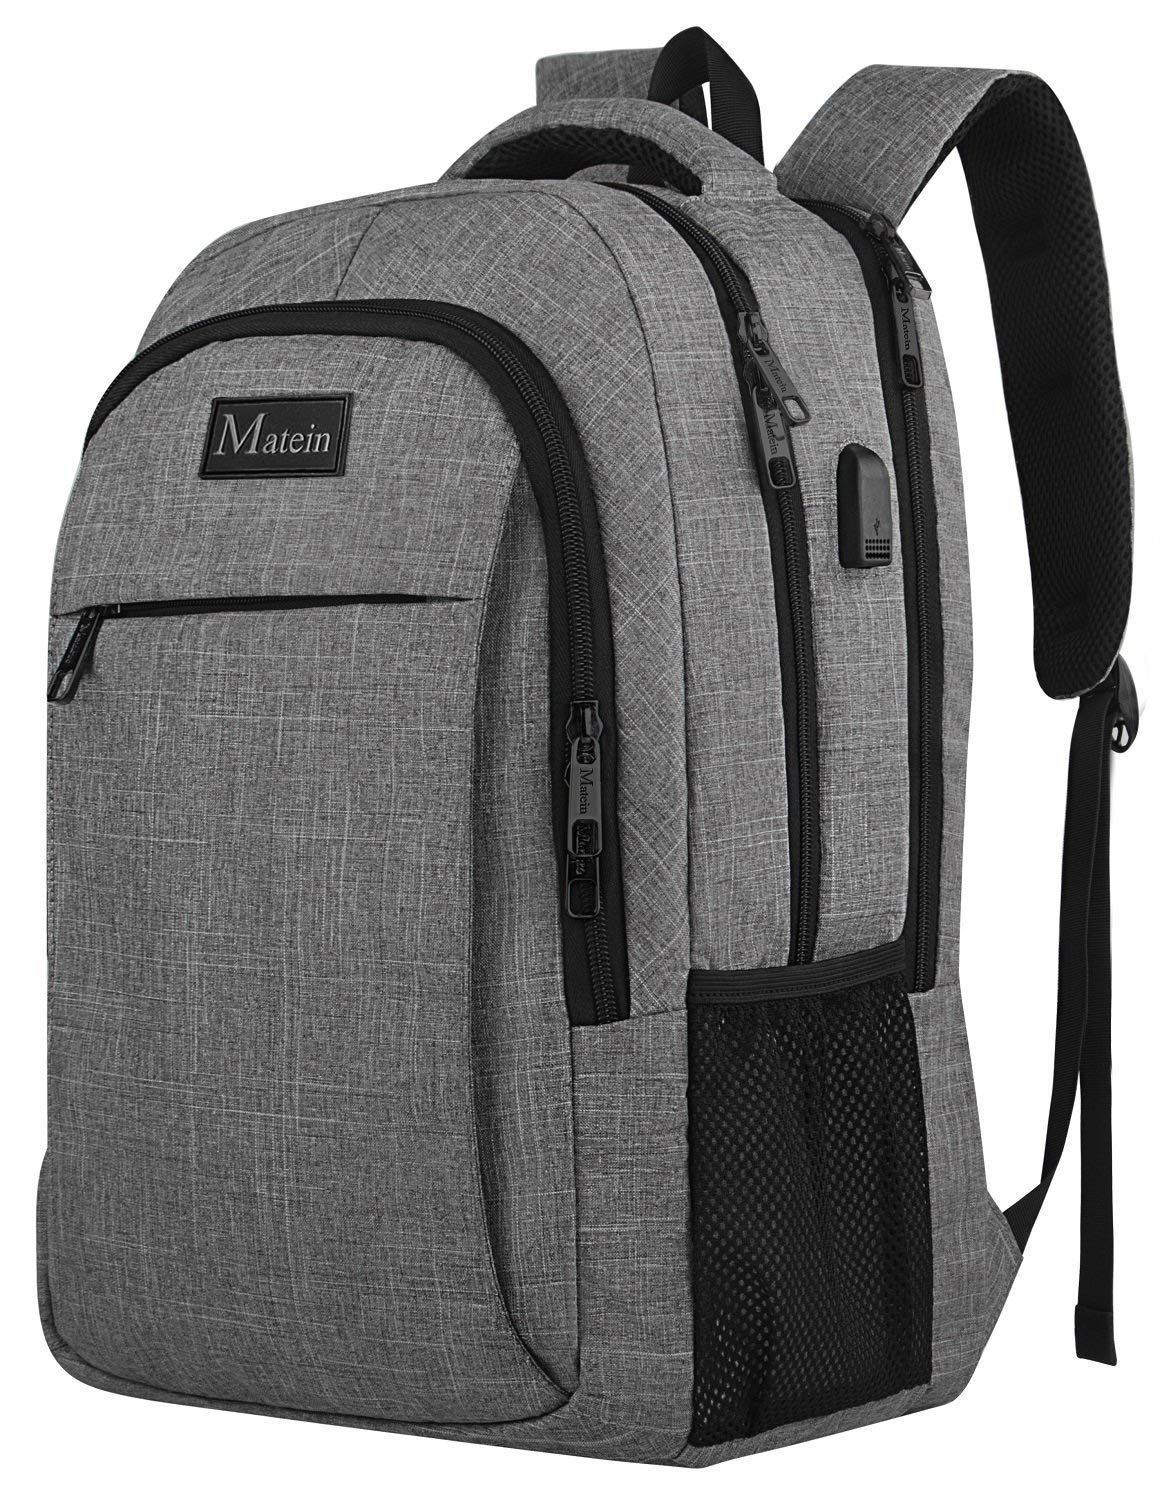 MAPOLO Moon Star Night Dream School Backpack Travel Bag Rucksack College Bookbag Travel Laptop Bag Daypack Bag for Men Women 